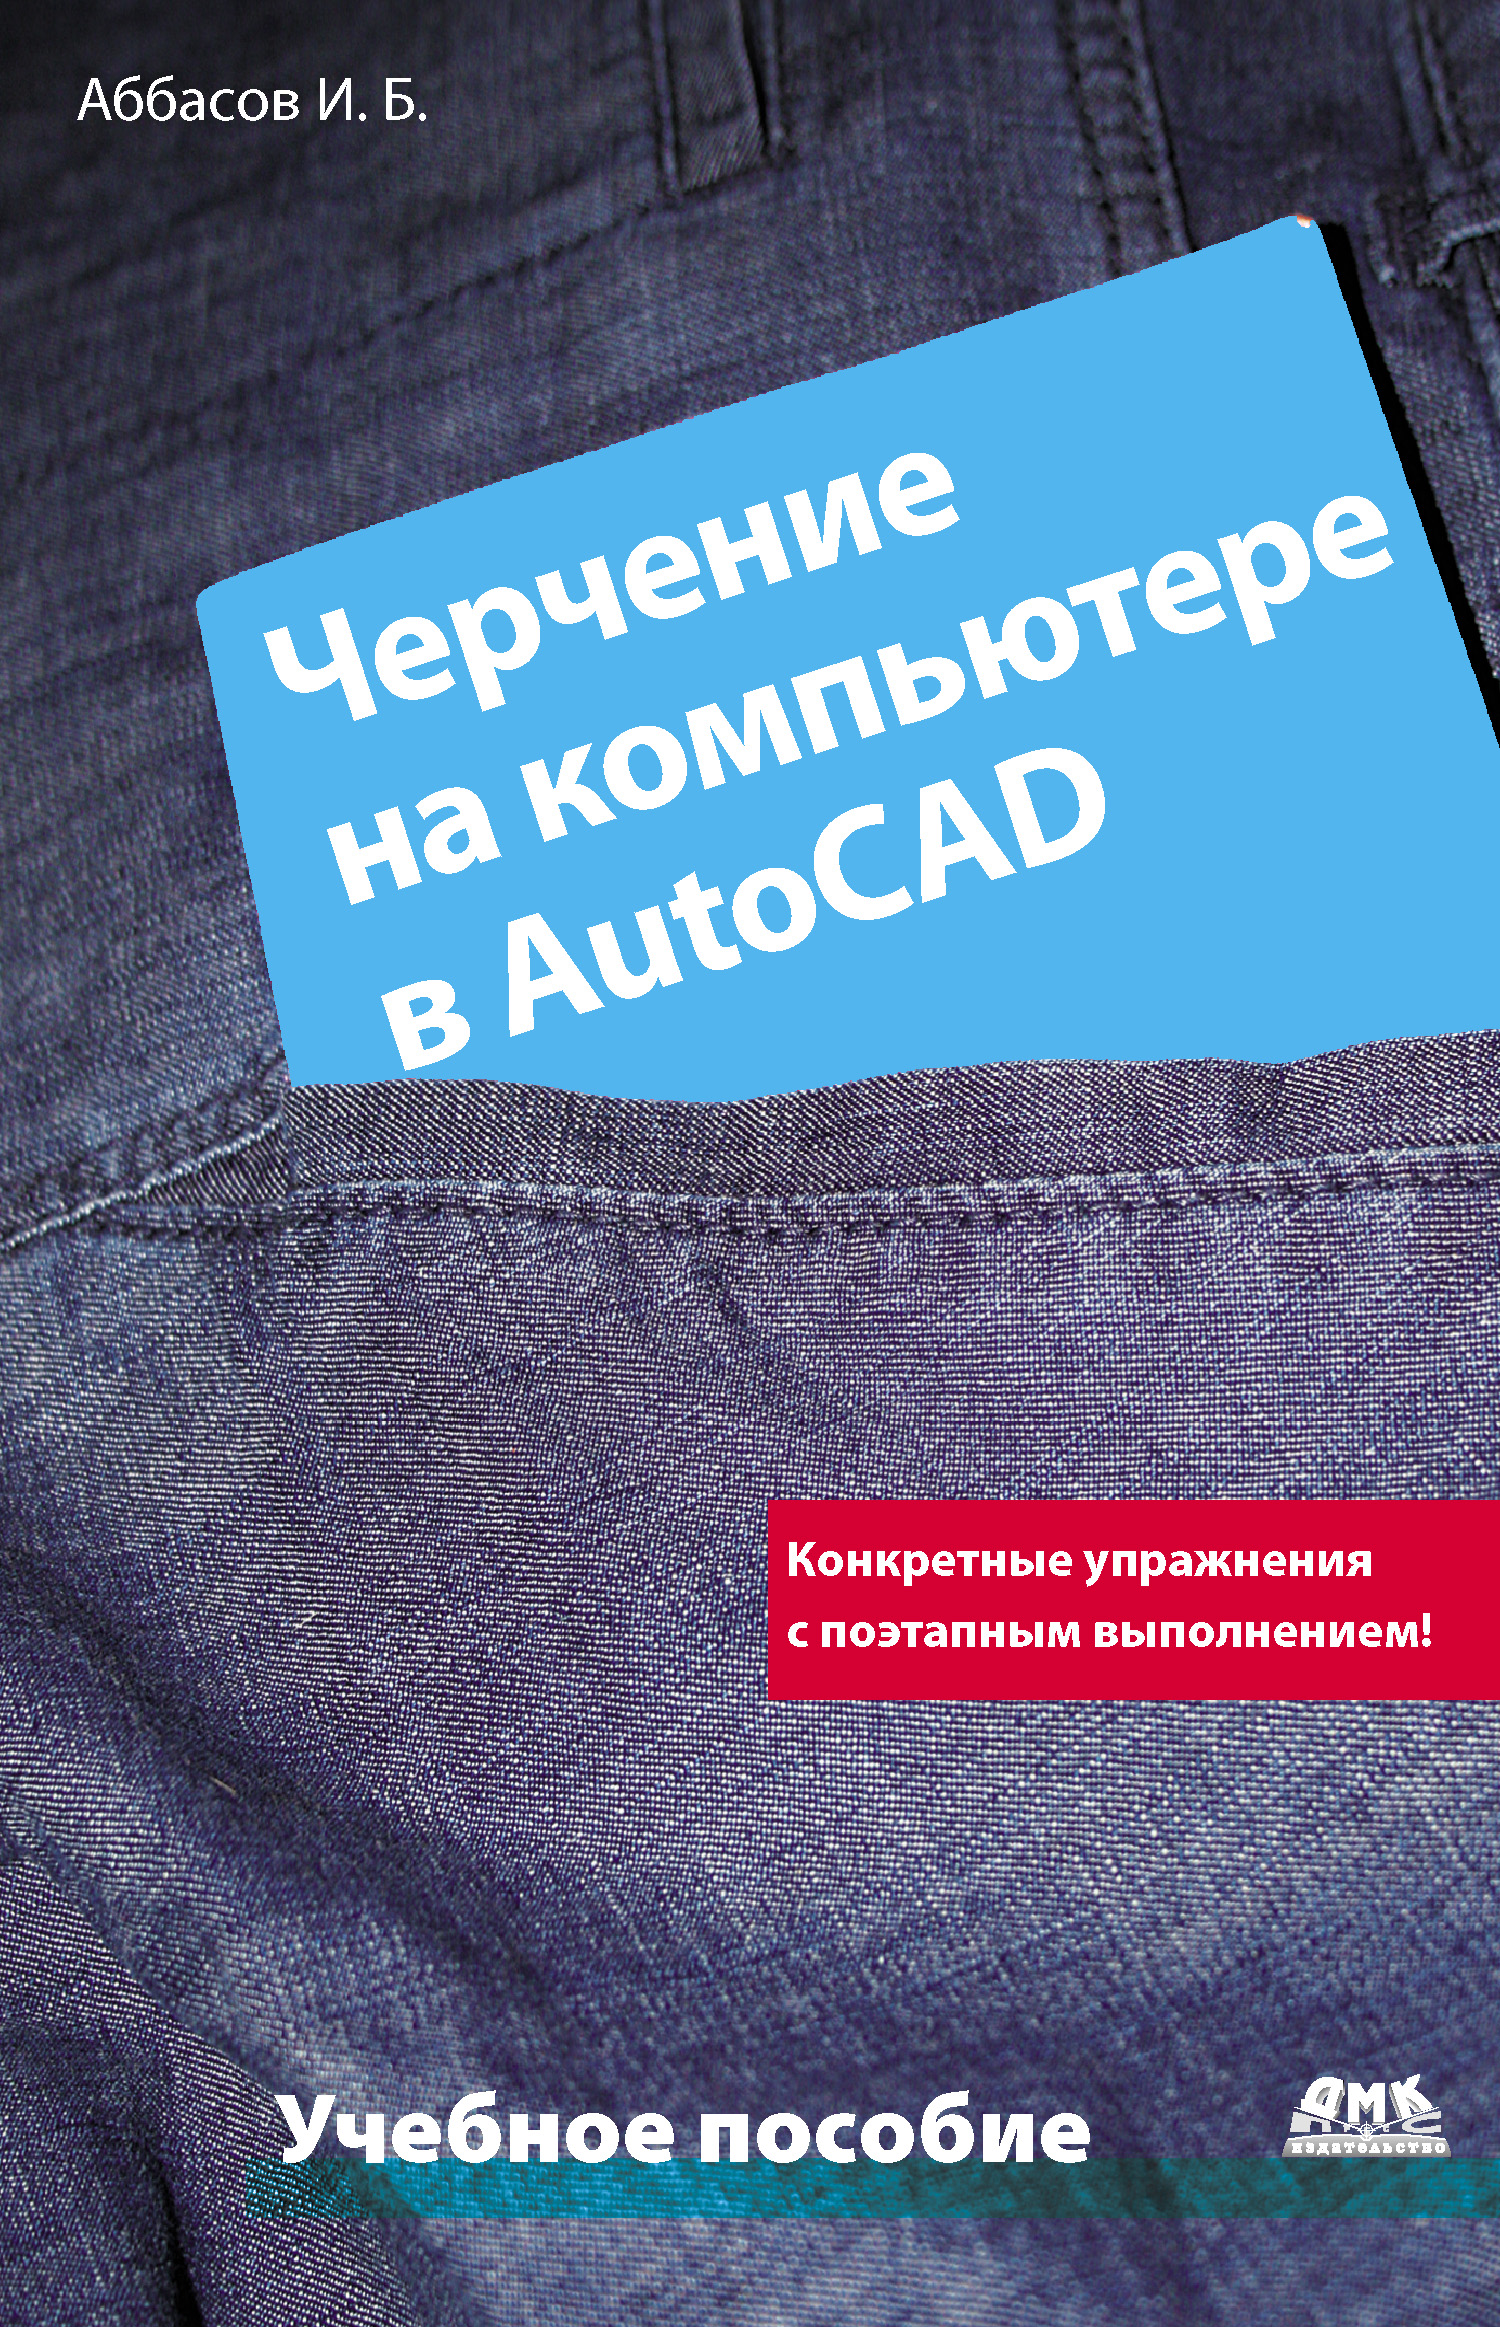 Книга  Черчение на компьютере в AutoCAD созданная И. Б. Аббасов может относится к жанру программы, техническая литература. Стоимость электронной книги Черчение на компьютере в AutoCAD с идентификатором 631995 составляет 87.00 руб.